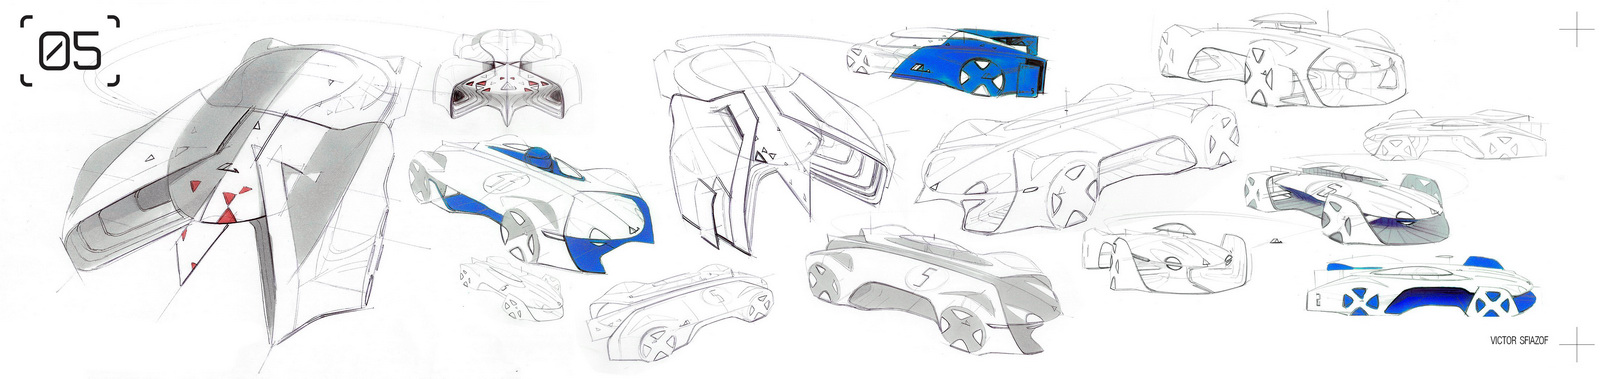 Alpine Vision Gran Turismo (2015) - Design Sketches by Victor Sfiazof